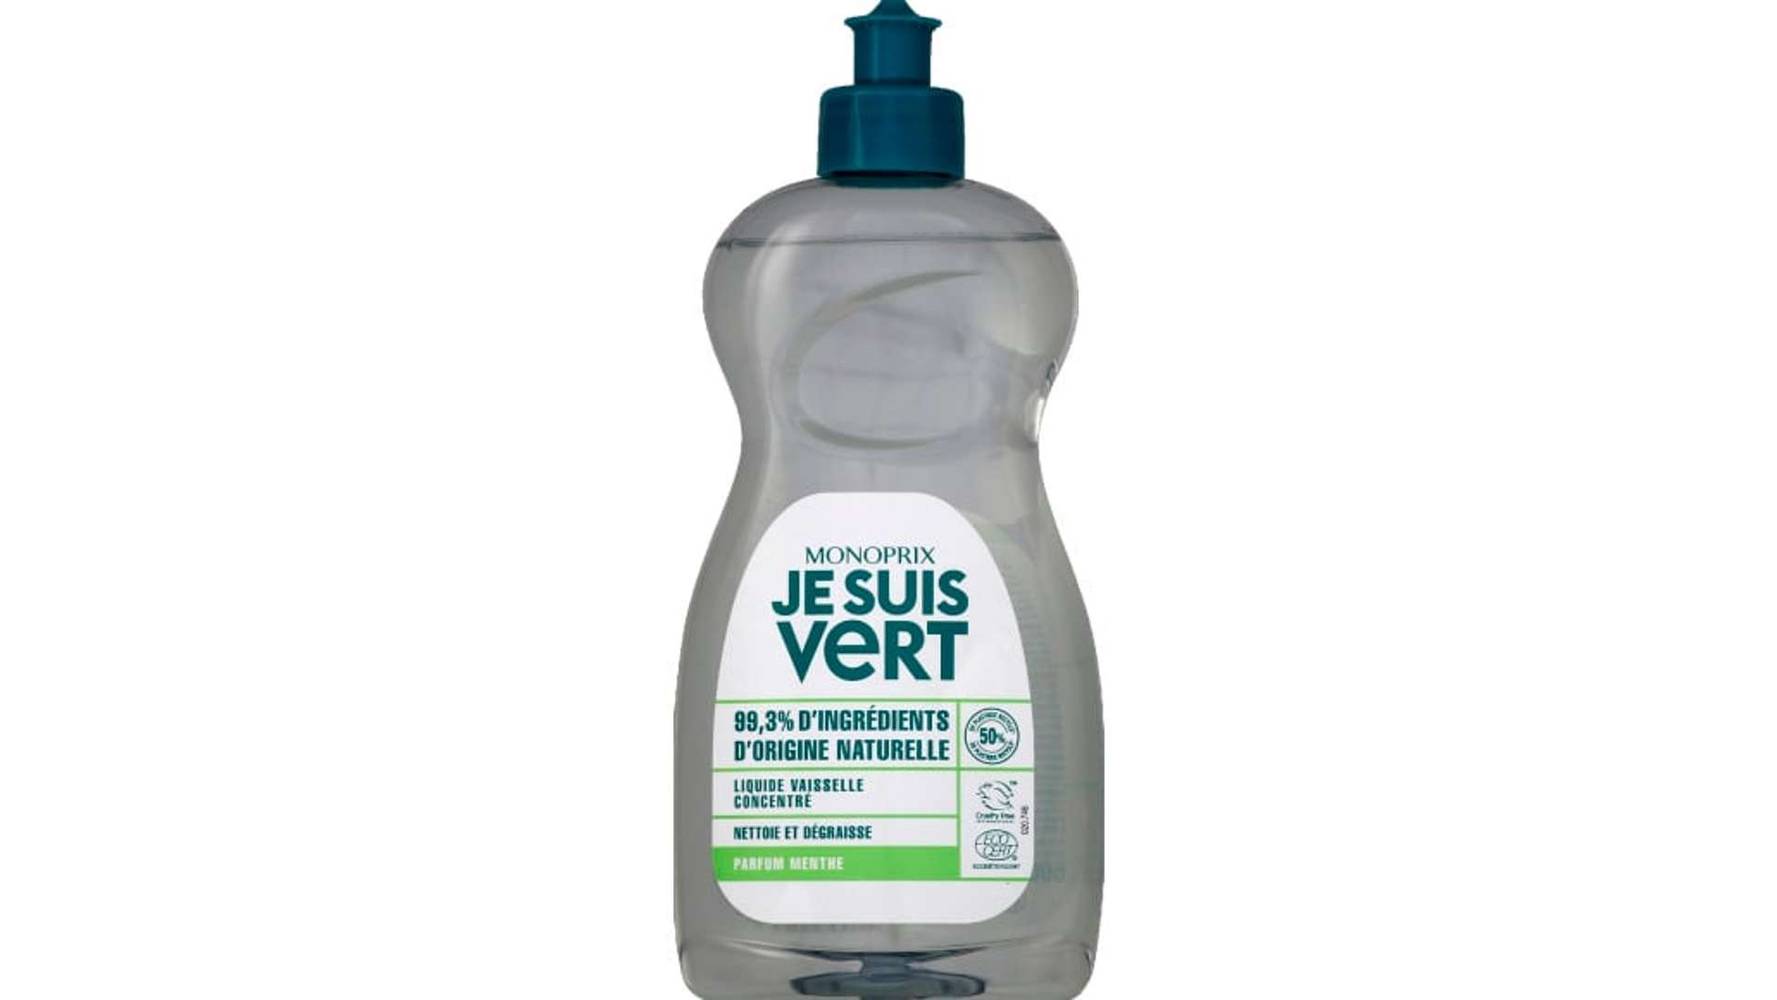 Monoprix Je Suis Vert Liquide vaisselle concentré parfum menthe Le flacon de 500 ml